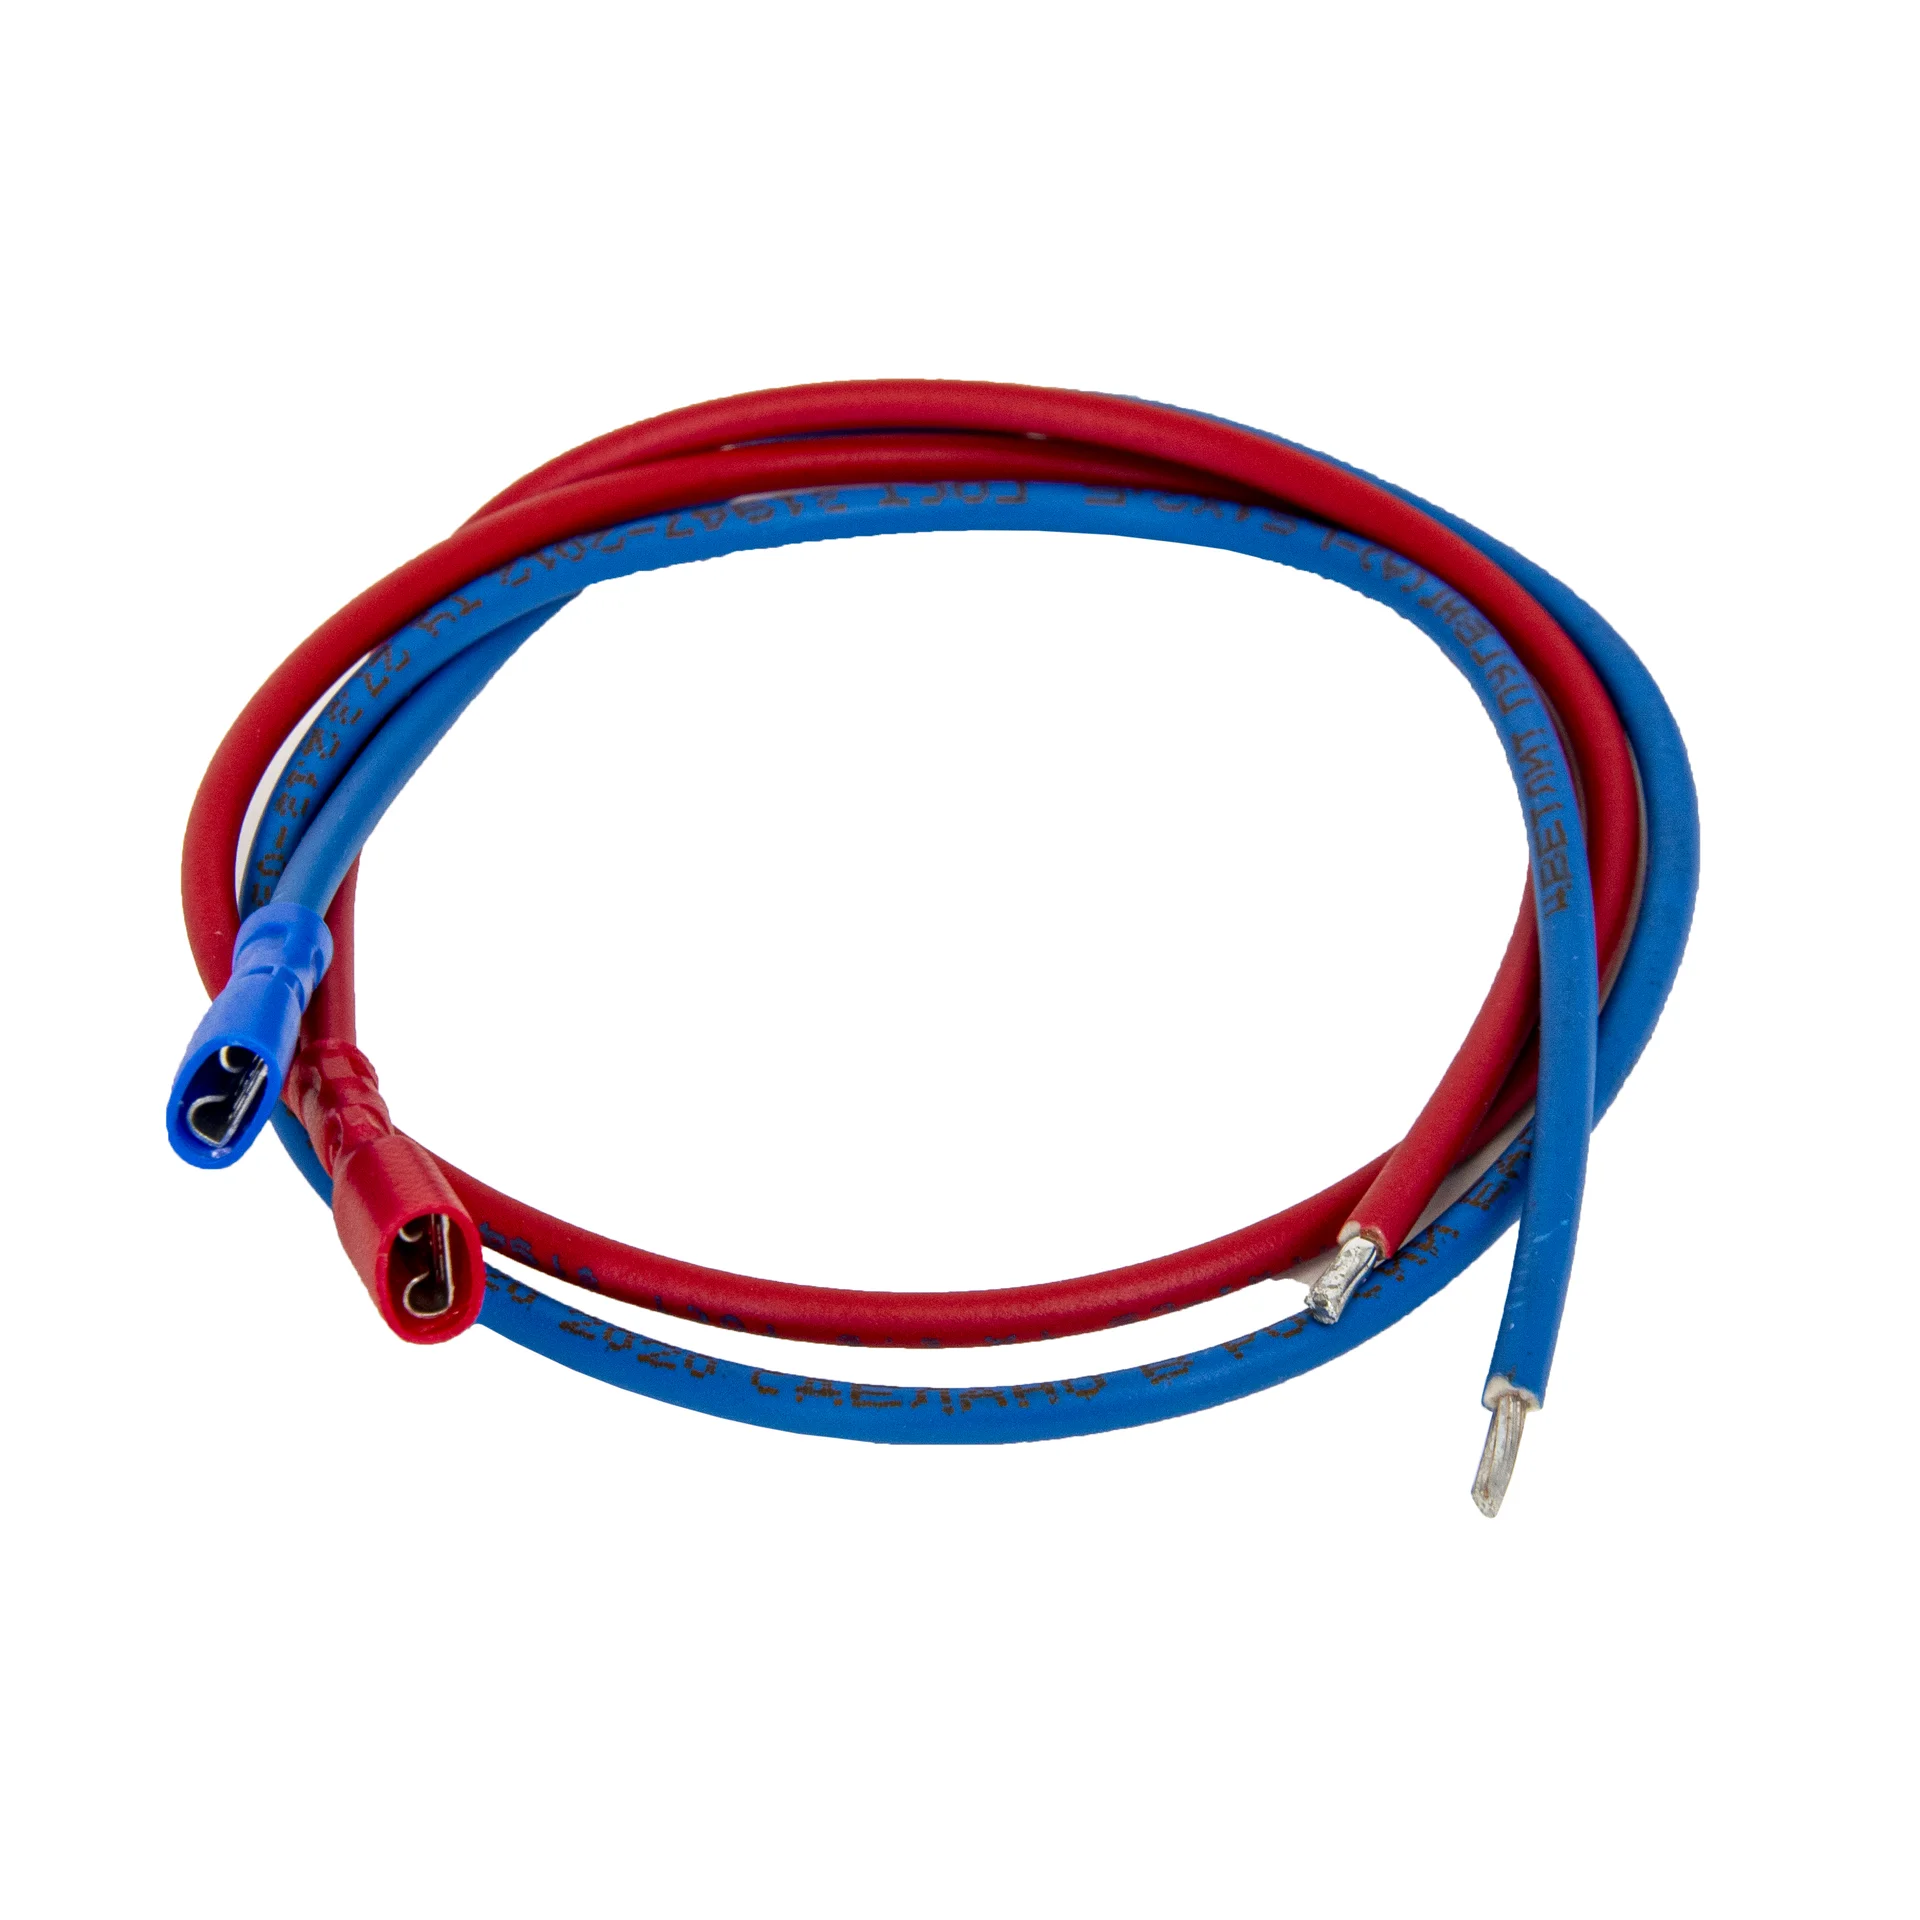 SNR-AKK-Cable-1m - Кабельный набор для подключения аккумуляторов, красный, синий, 1м, с наконечниками [36235] купить в Казани 	Набор предназначен для соединения аккумуляторных батарей с сопутствующей аппаратурой, такой как ист